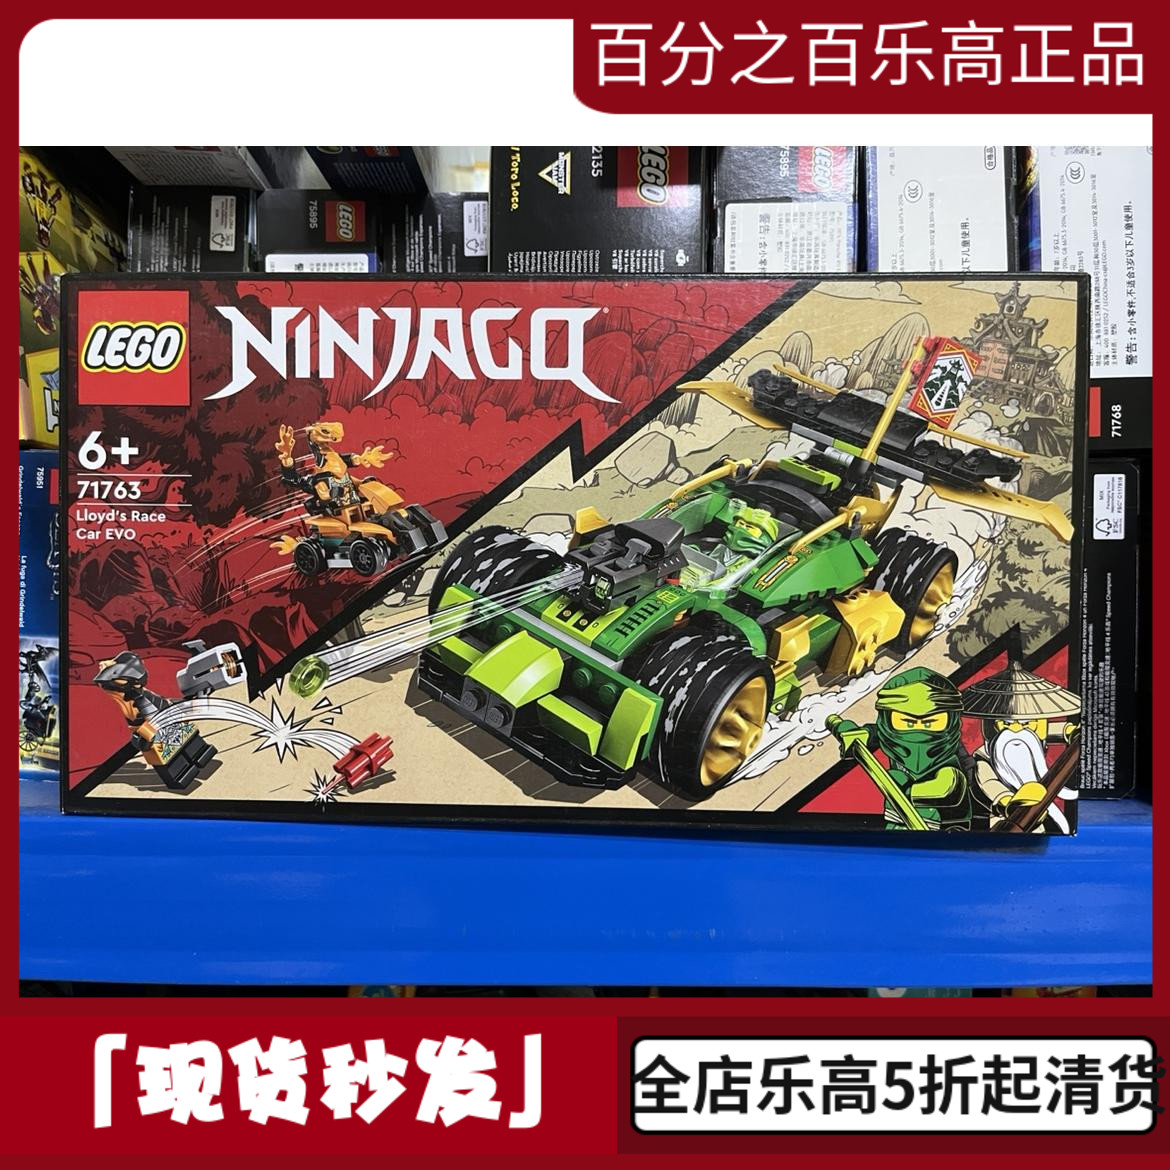 【正品保证】LEGO/乐高积木幻影忍者71763劳埃德闪电赛车玩具男